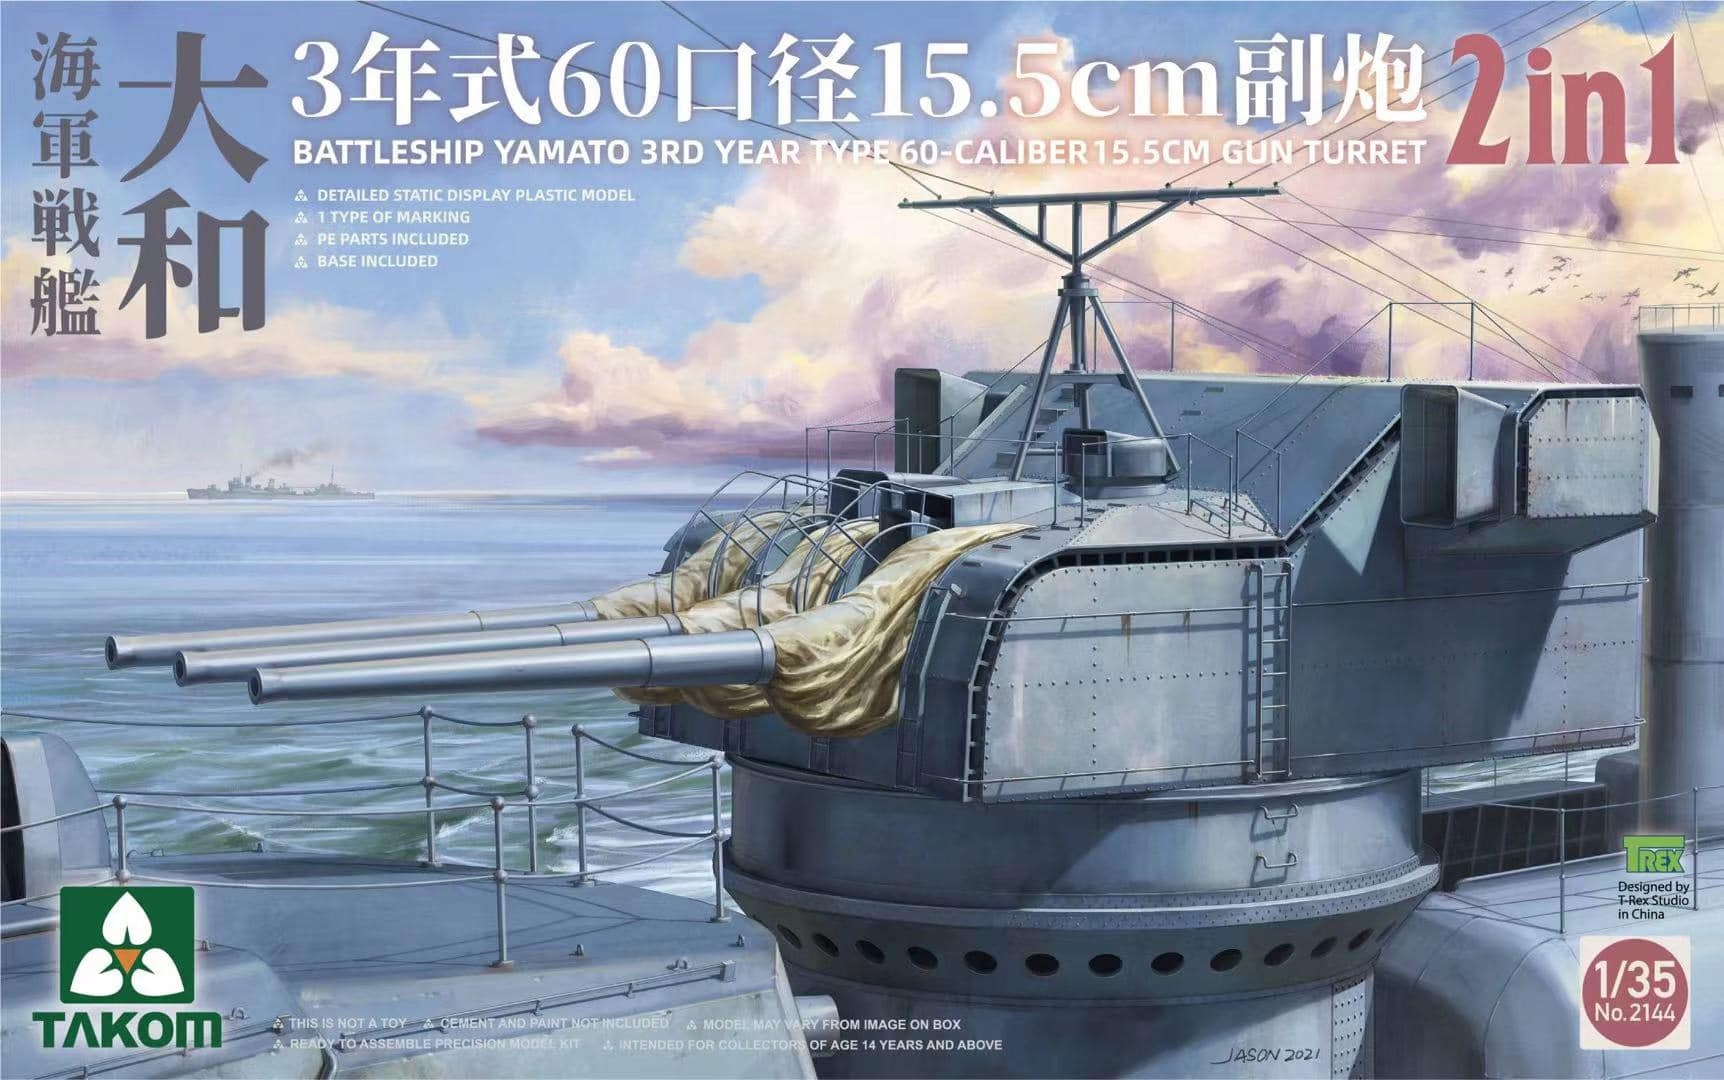 1/72 Metal Barrel for Takom 5015 USS Missouri Battleship MK.716 /50 Gun Turret